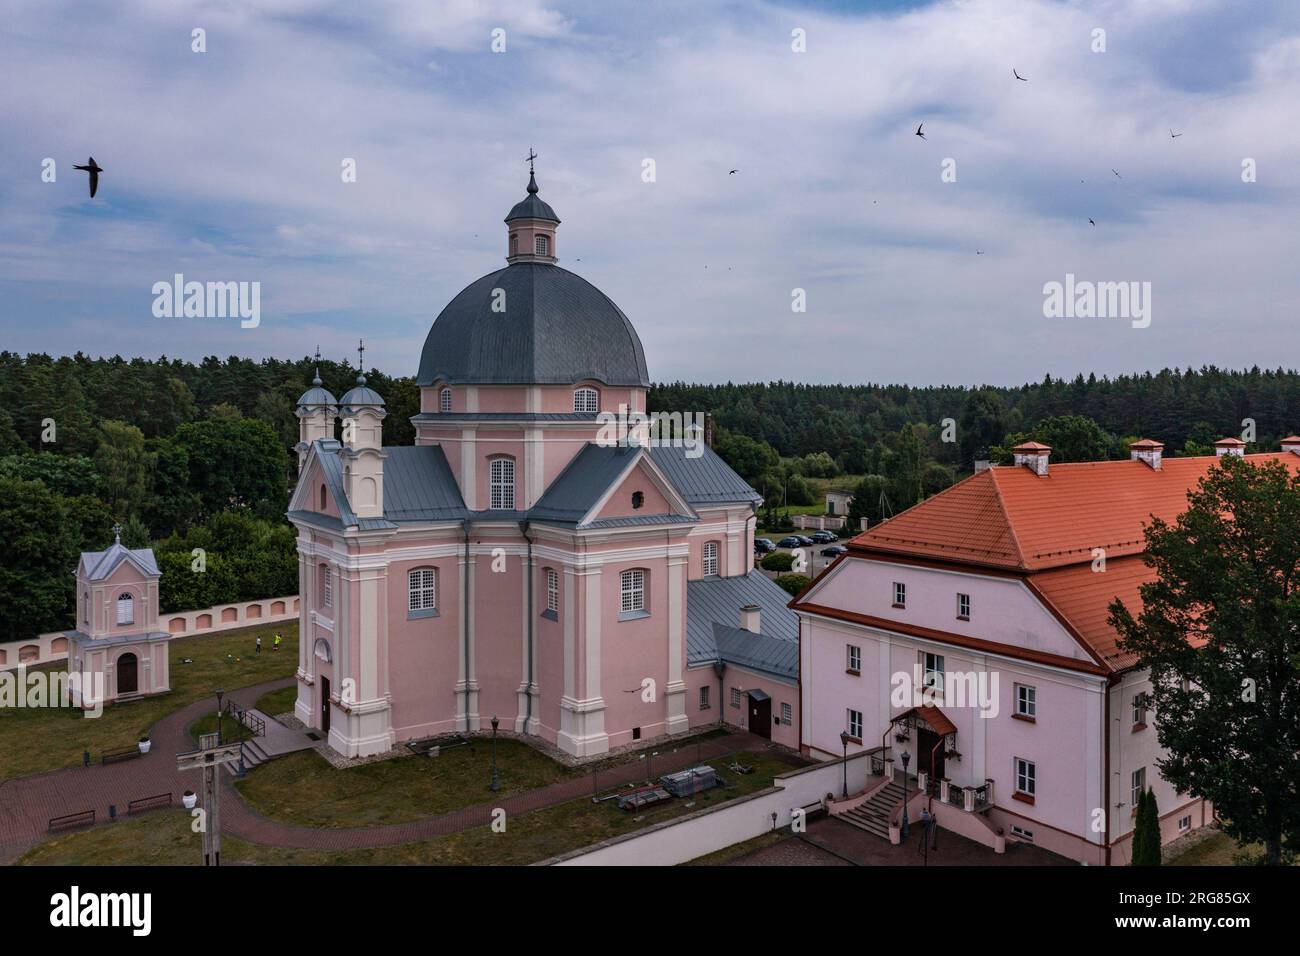 DAS Liskiava Kloster, südlich von Druskininkai gelegen, ist ein weiteres herausragendes kulturelles Denkmal in Litauen. Ursprünglich im Jahr 1625 al Banque D'Images